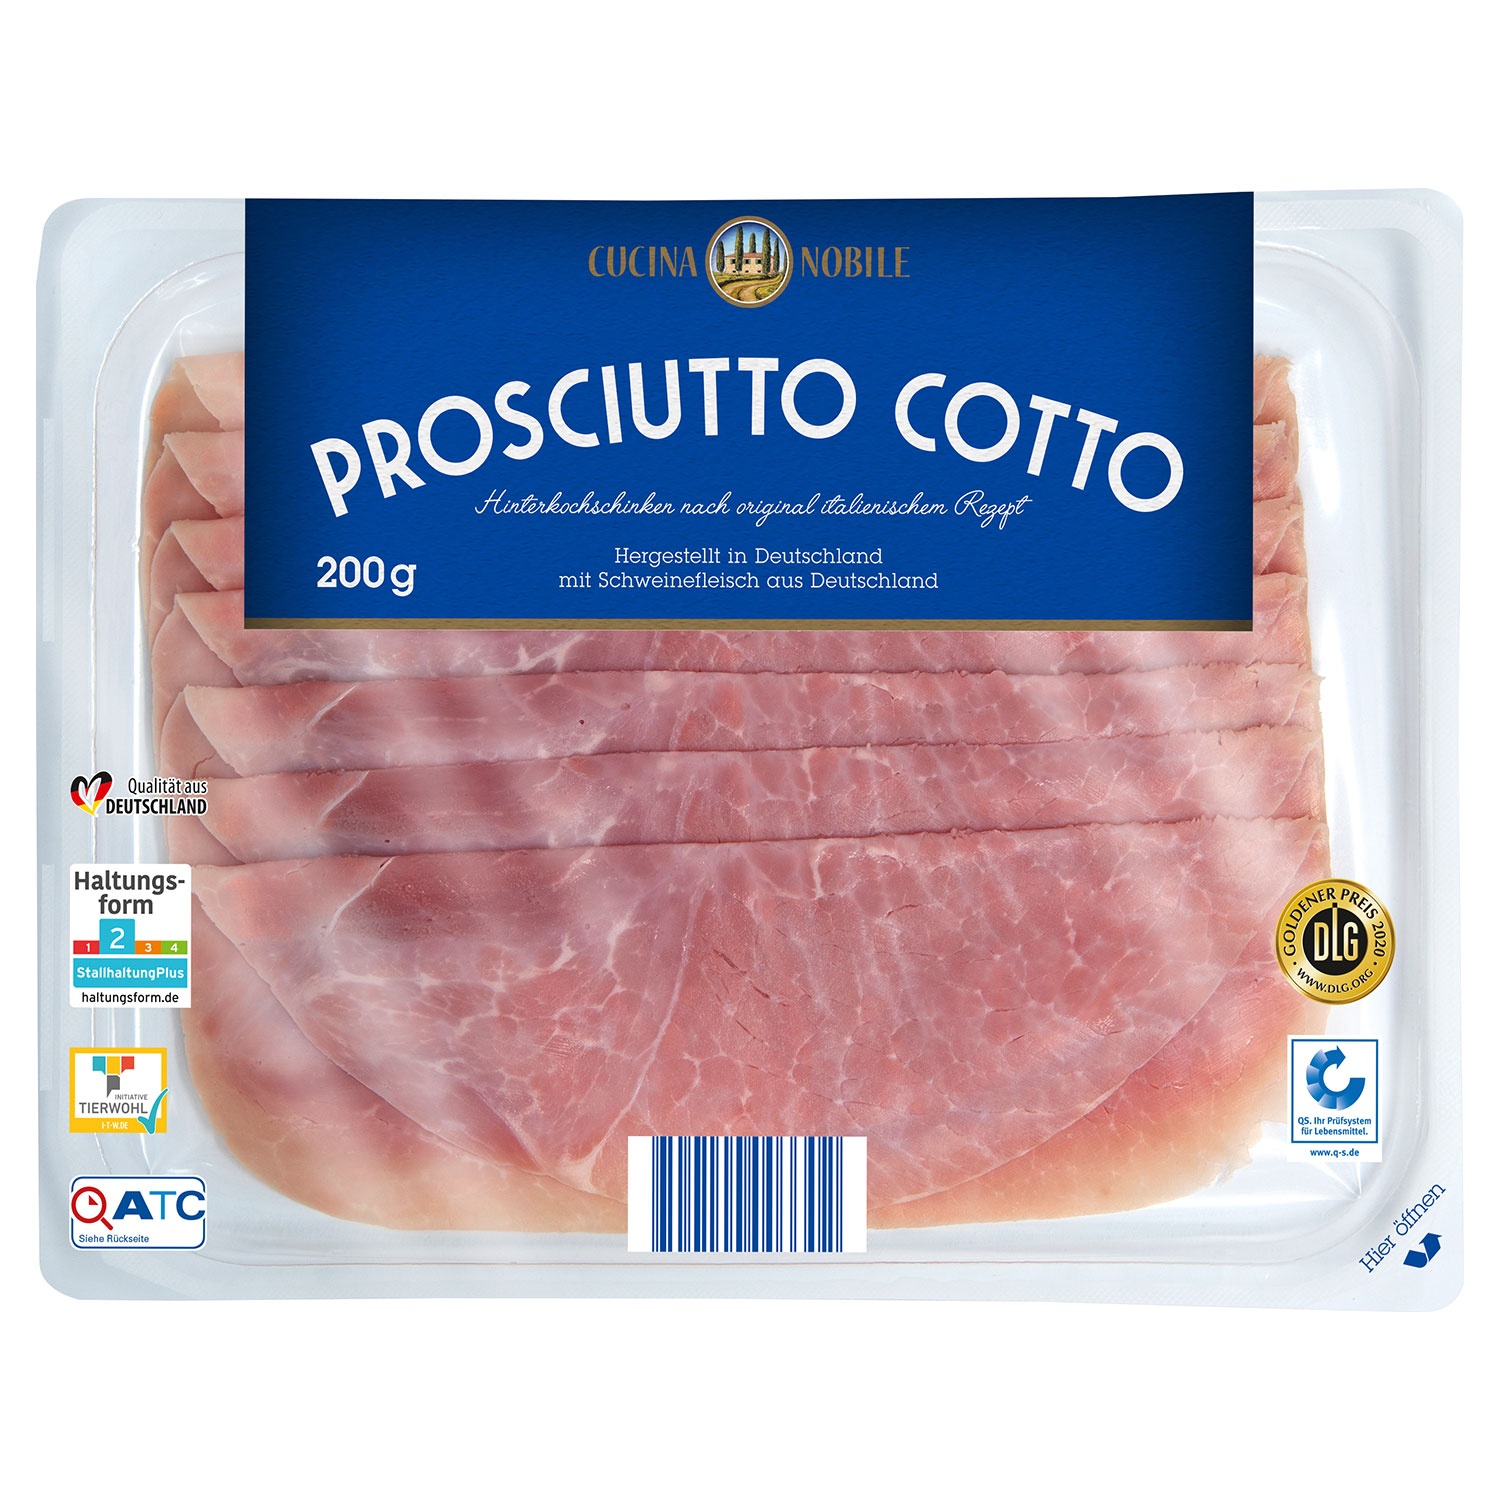 CUCINA NOBILE Prosciutto Cotto 200 g